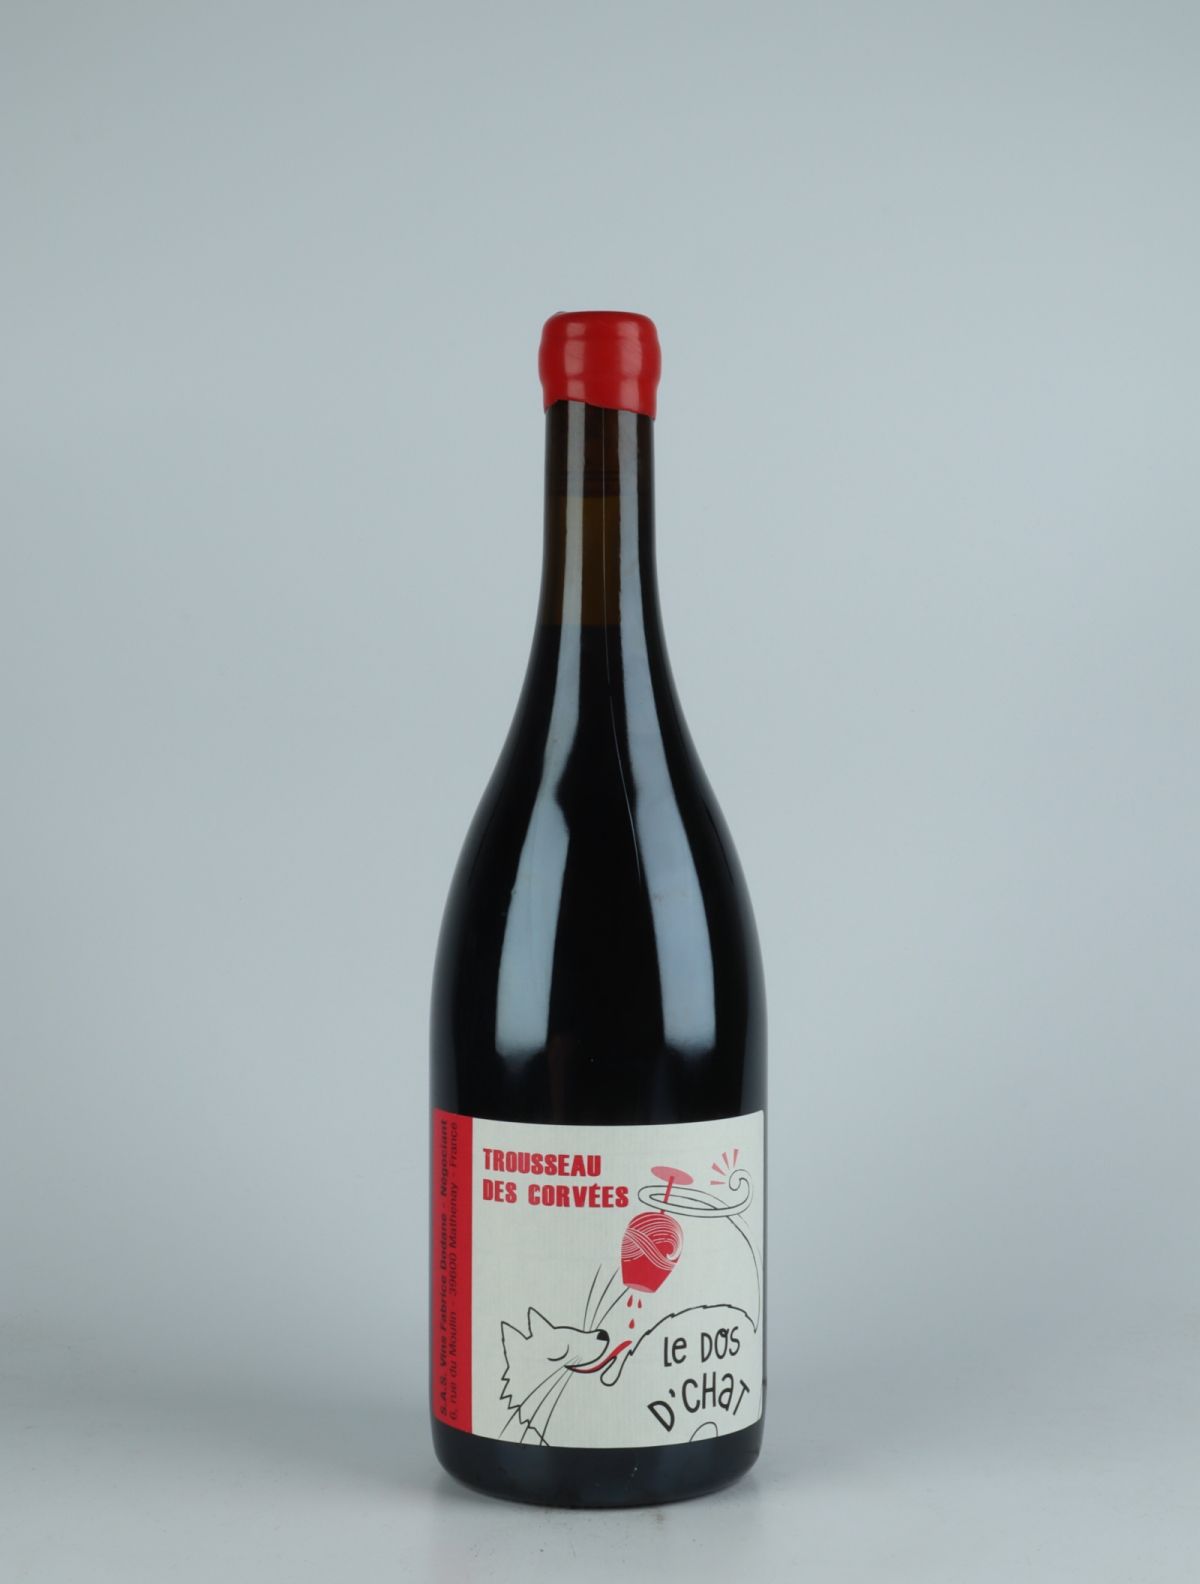 En flaske 2020 Arbois Rouge - Trousseau des Corvées Rødvin fra Fabrice Dodane, Jura i Frankrig